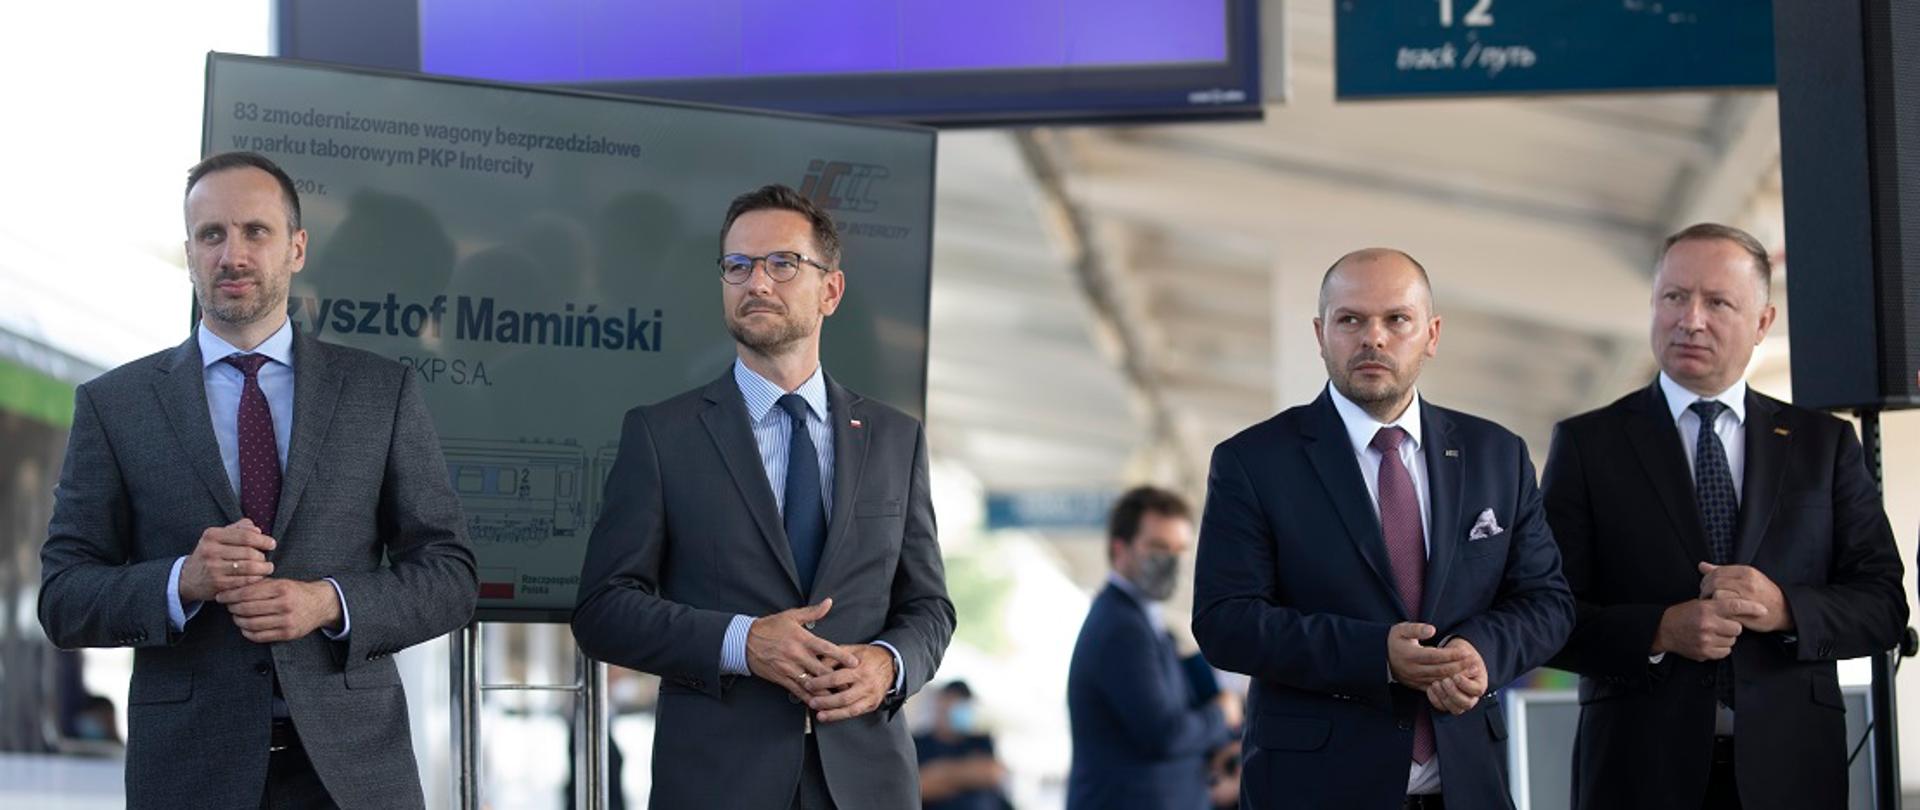 Na zdjęciu widać cztery osoby stojące na peronie kolejowym, wśród nich jest pan minister Waldemar Buda